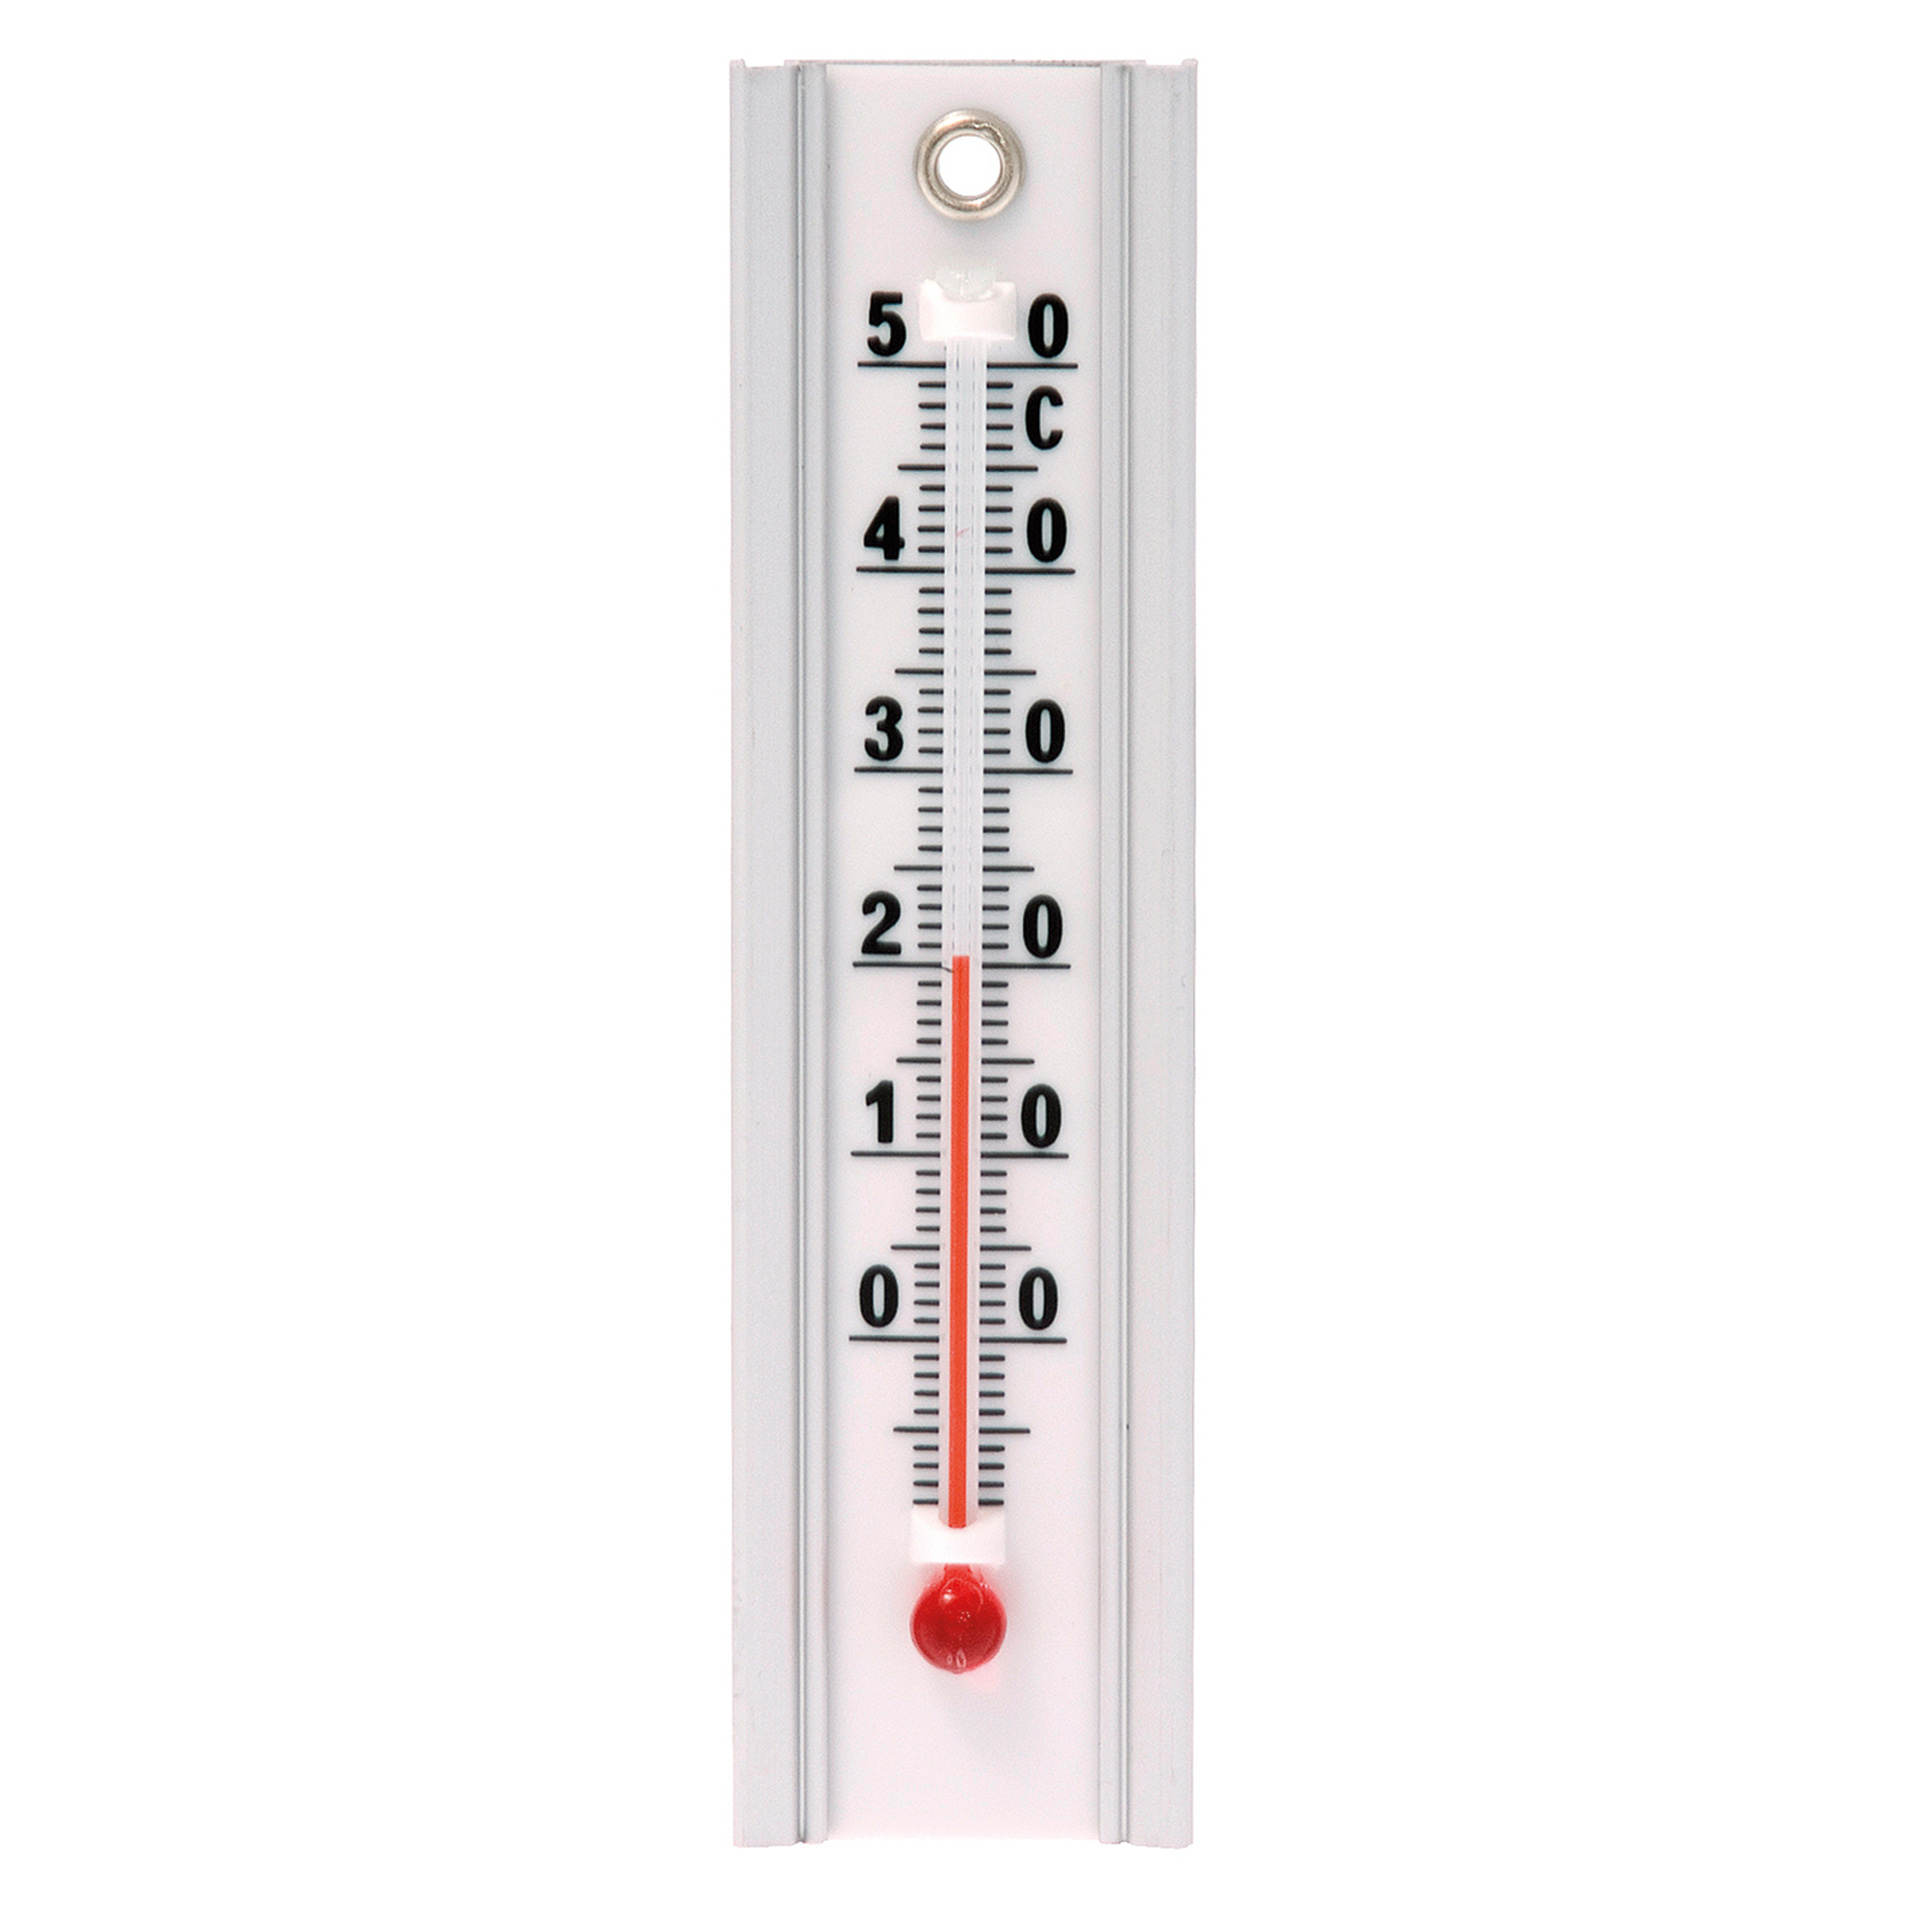 Градусники для помещений. Термометр. Термометр для помещения. Термометр комнатный. Термометр температуры воздуха.